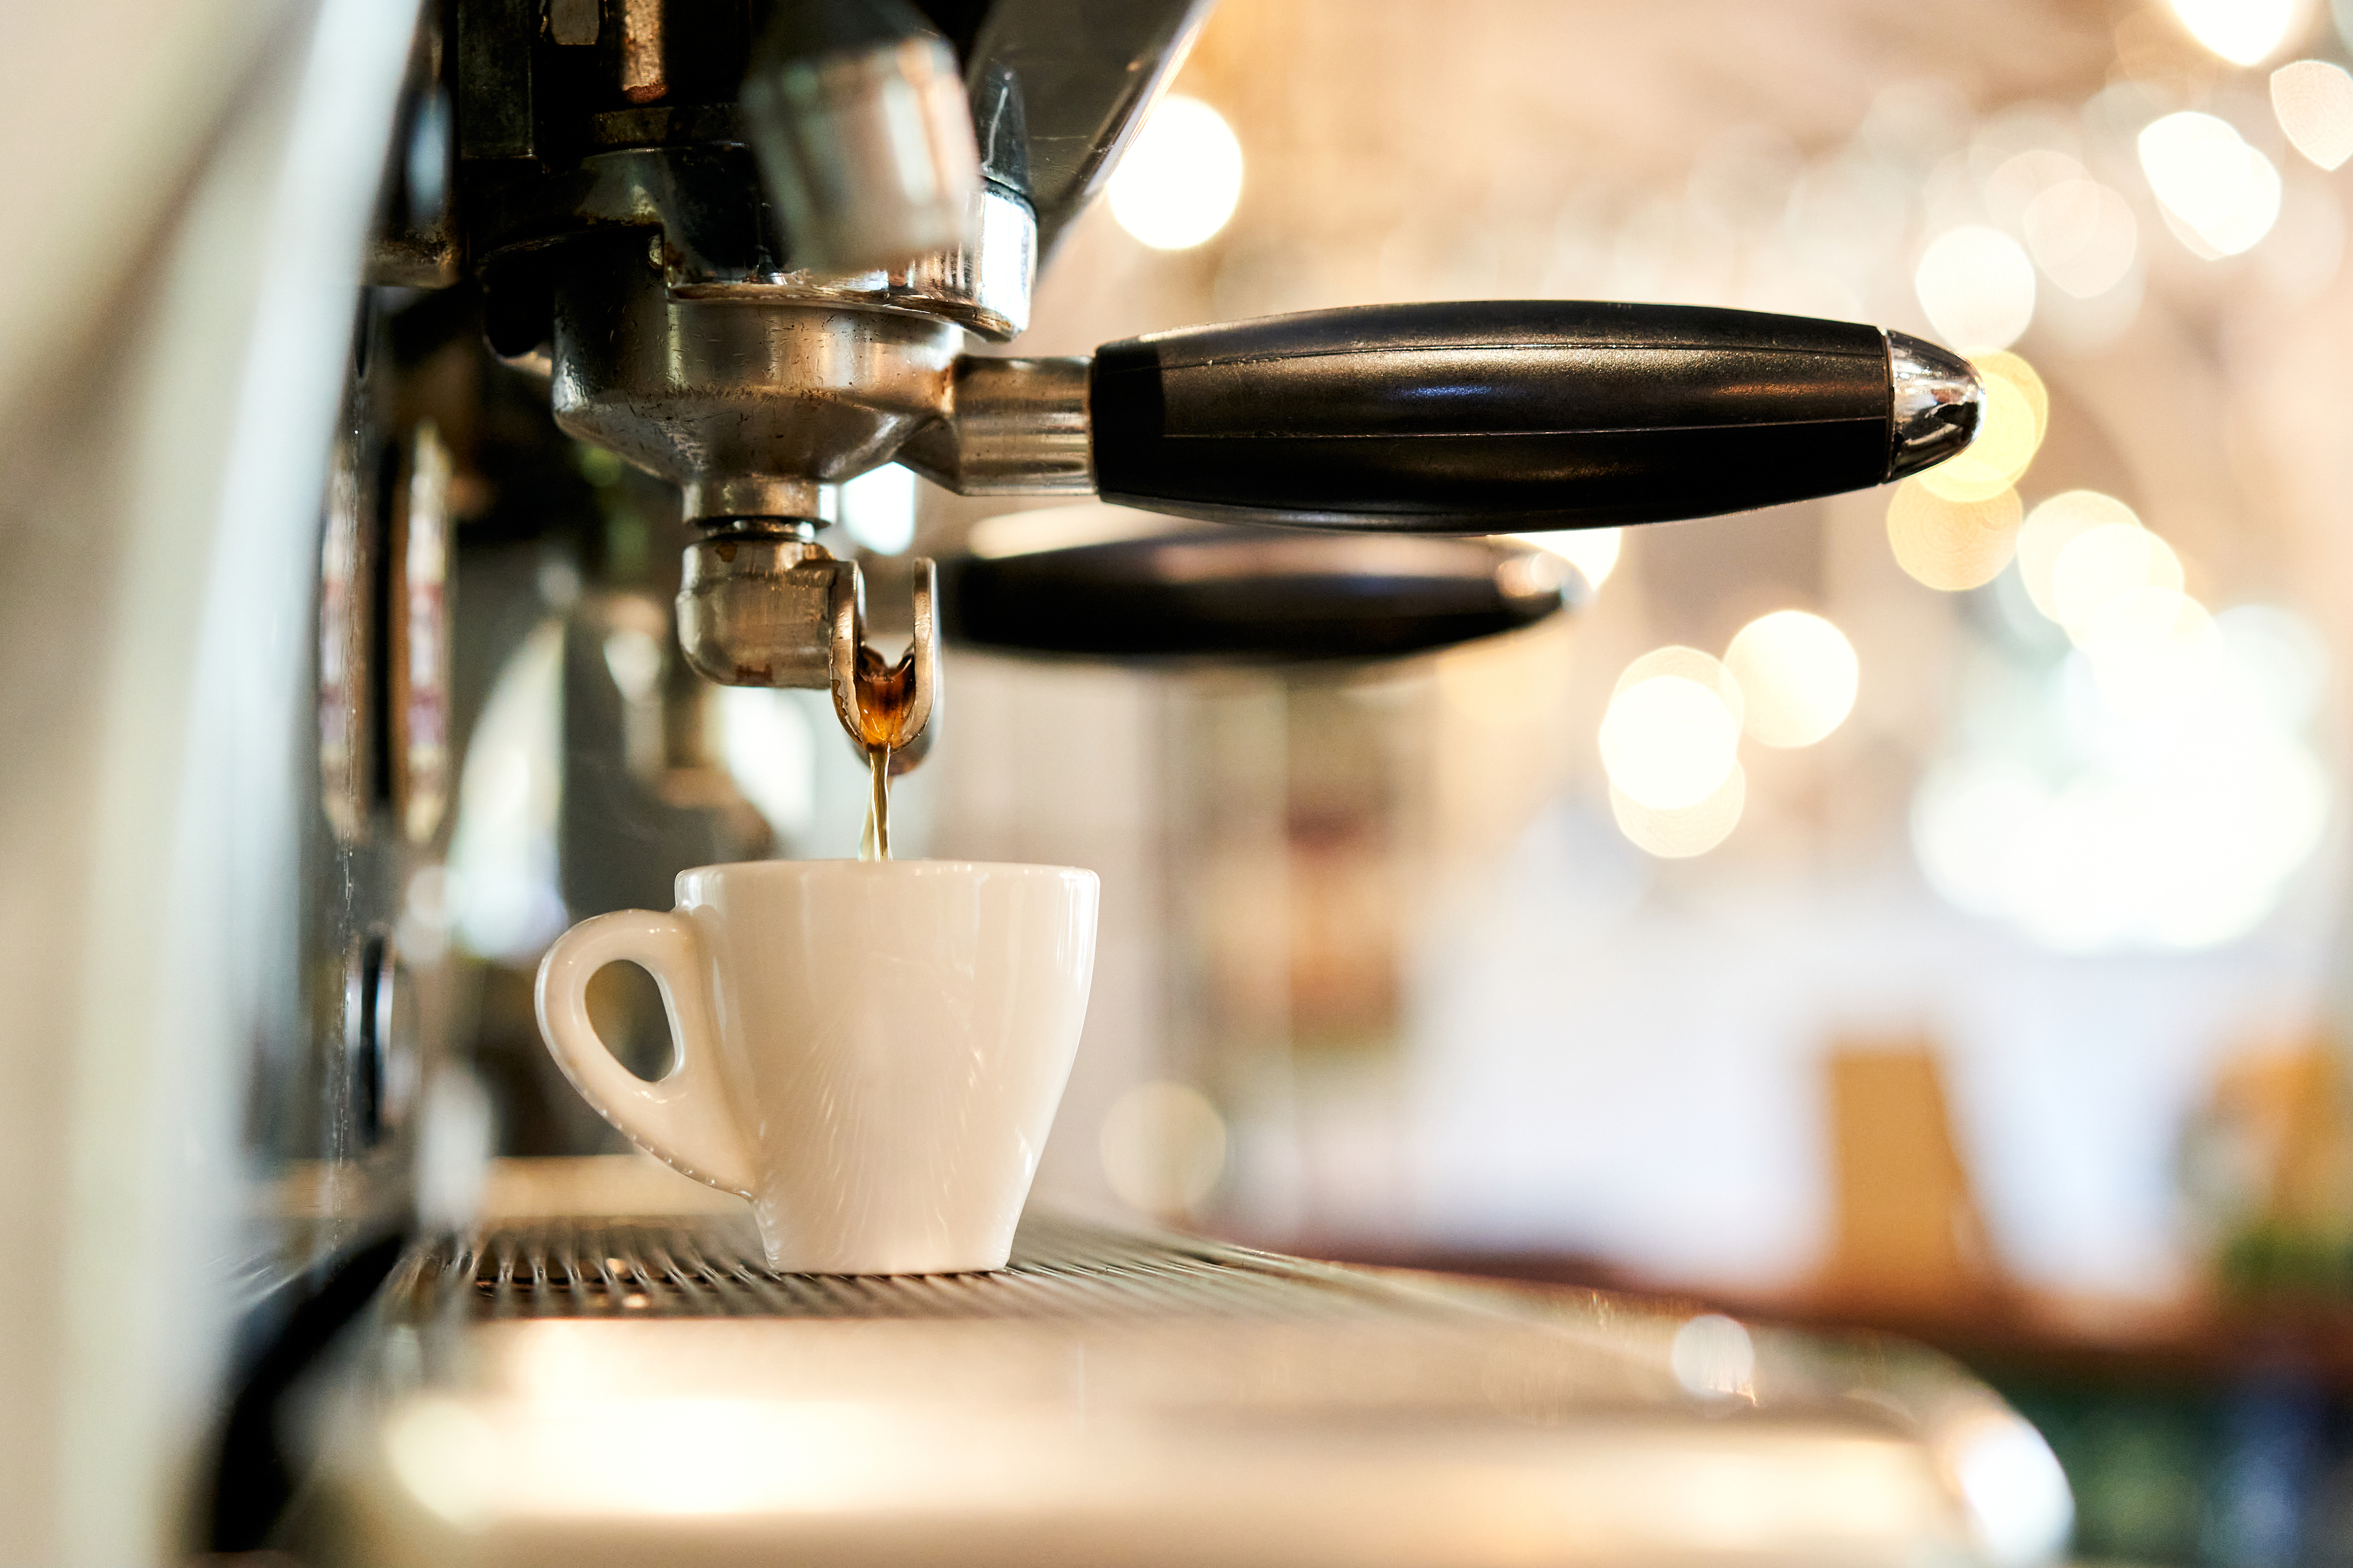 Espresso machine pouring coffee into a small cup